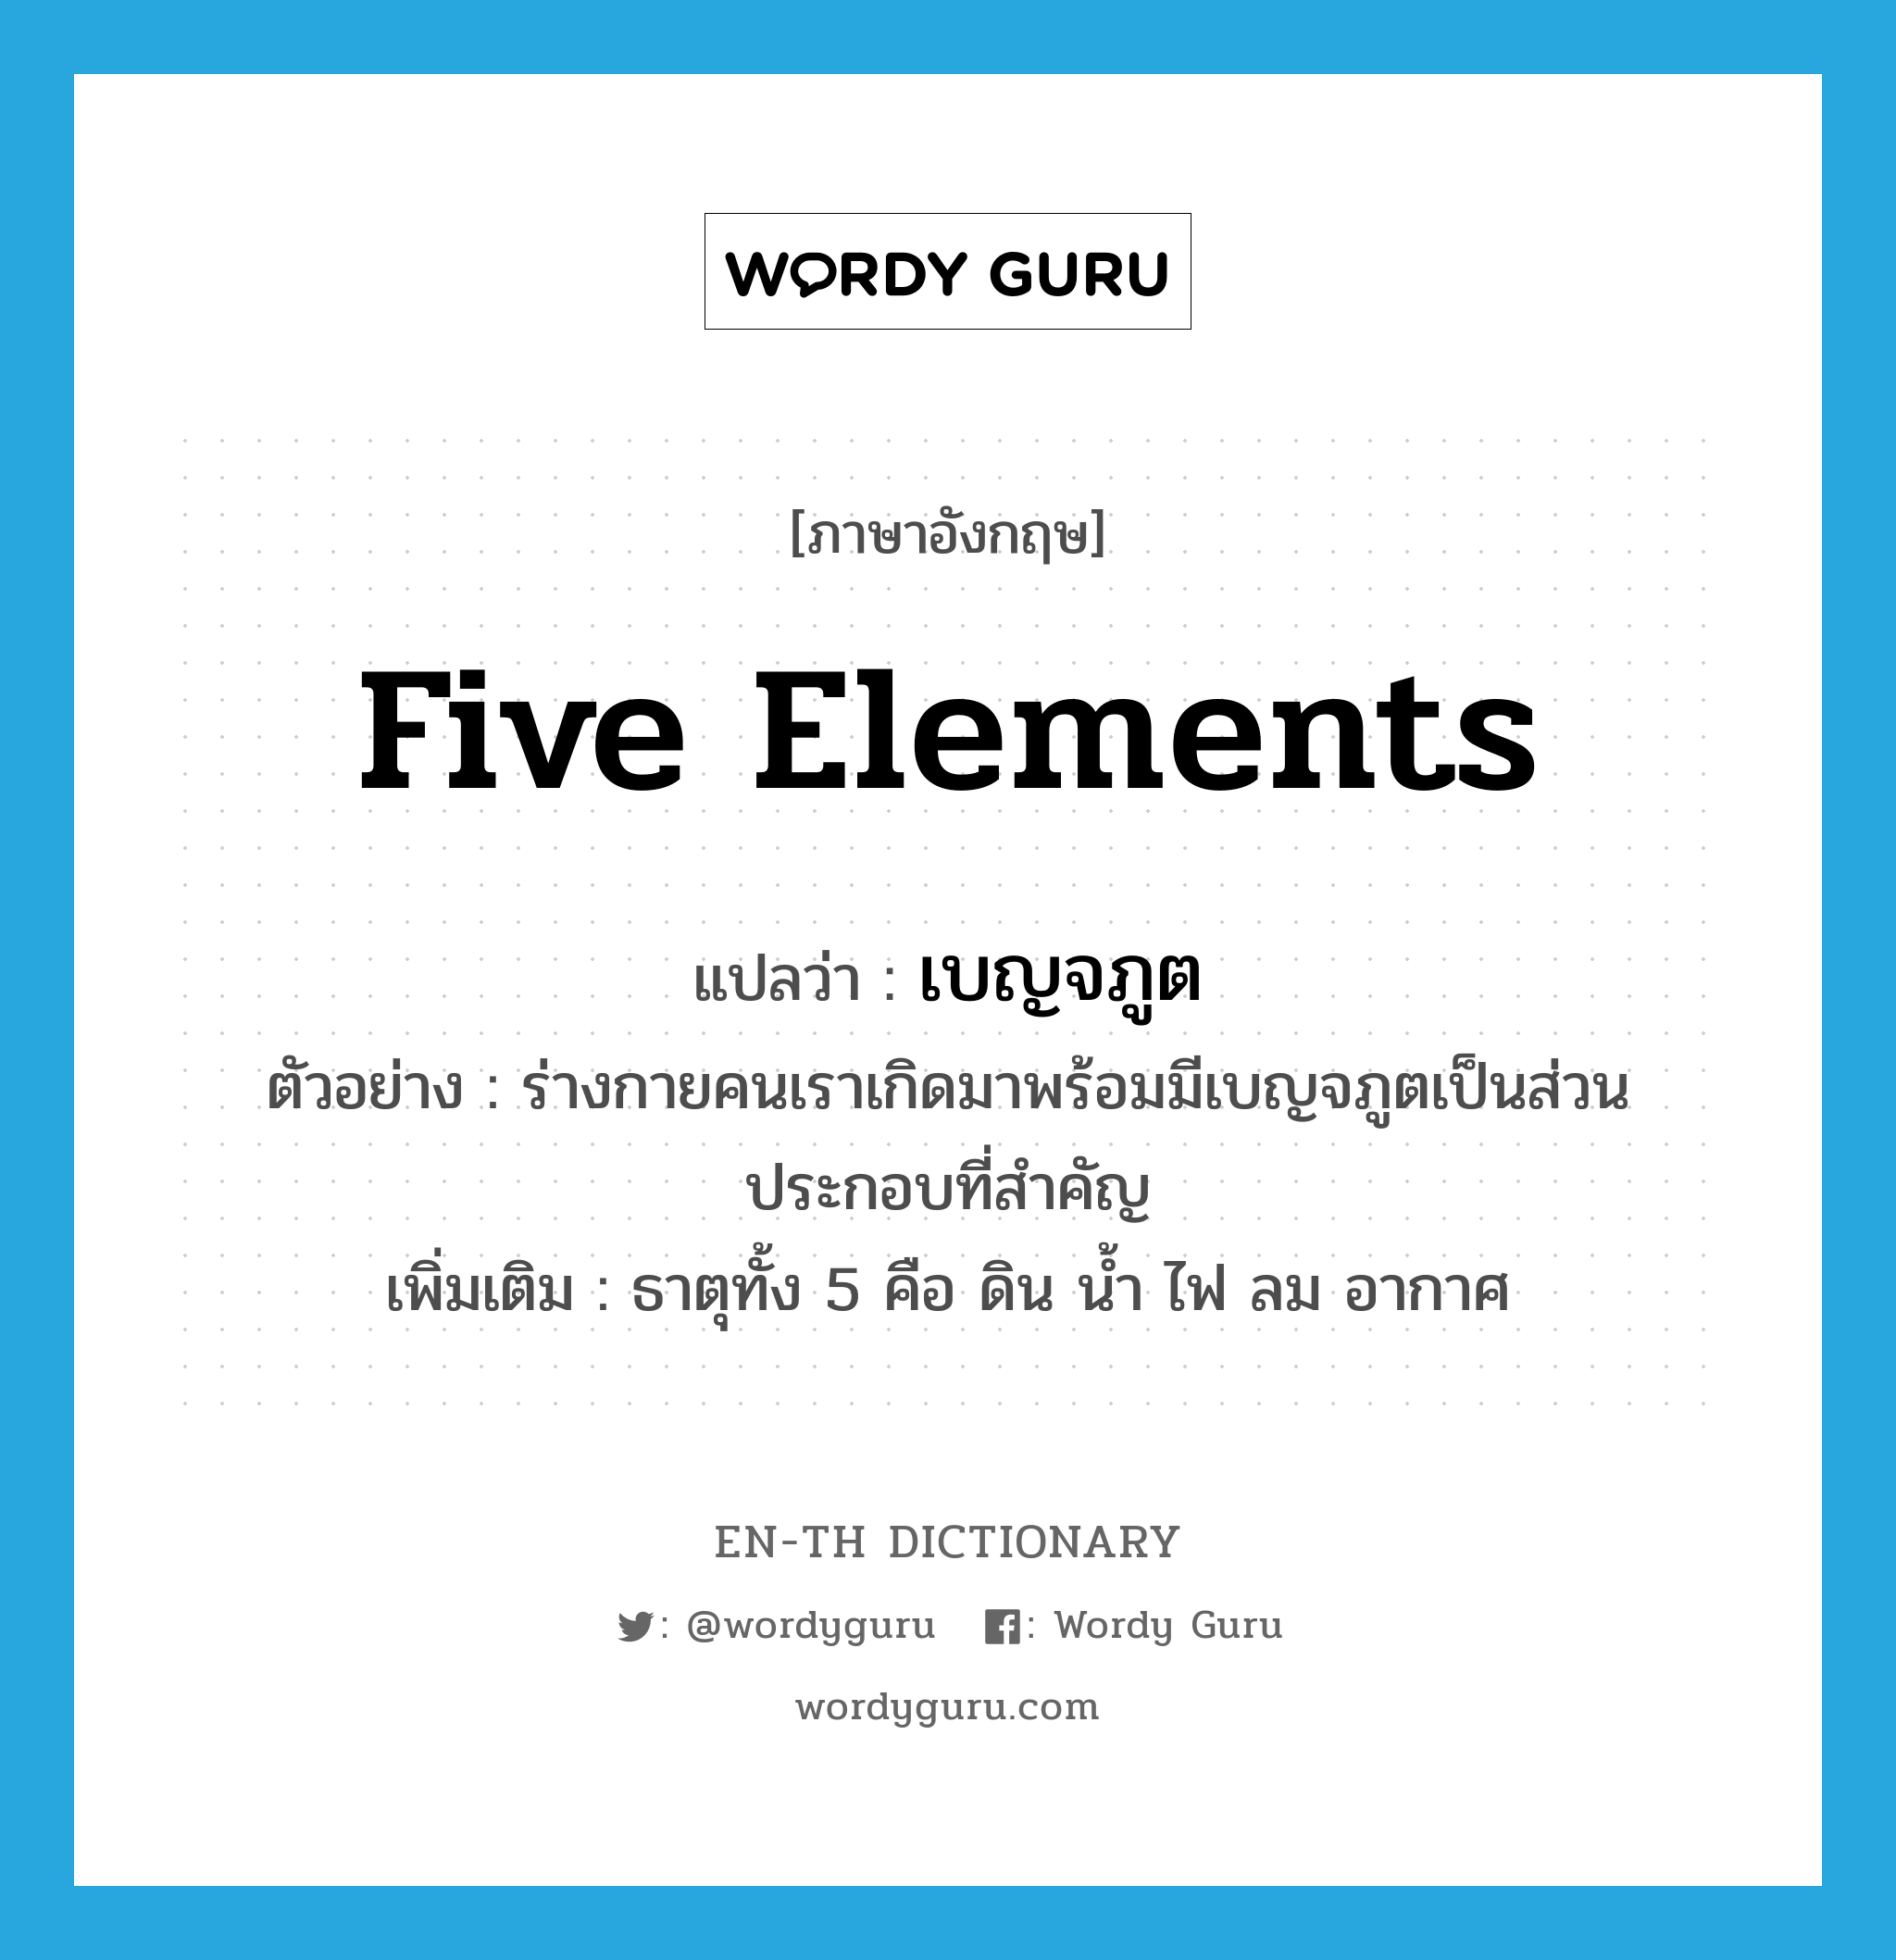 five elements แปลว่า?, คำศัพท์ภาษาอังกฤษ five elements แปลว่า เบญจภูต ประเภท N ตัวอย่าง ร่างกายคนเราเกิดมาพร้อมมีเบญจภูตเป็นส่วนประกอบที่สำคัญ เพิ่มเติม ธาตุทั้ง 5 คือ ดิน น้ำ ไฟ ลม อากาศ หมวด N